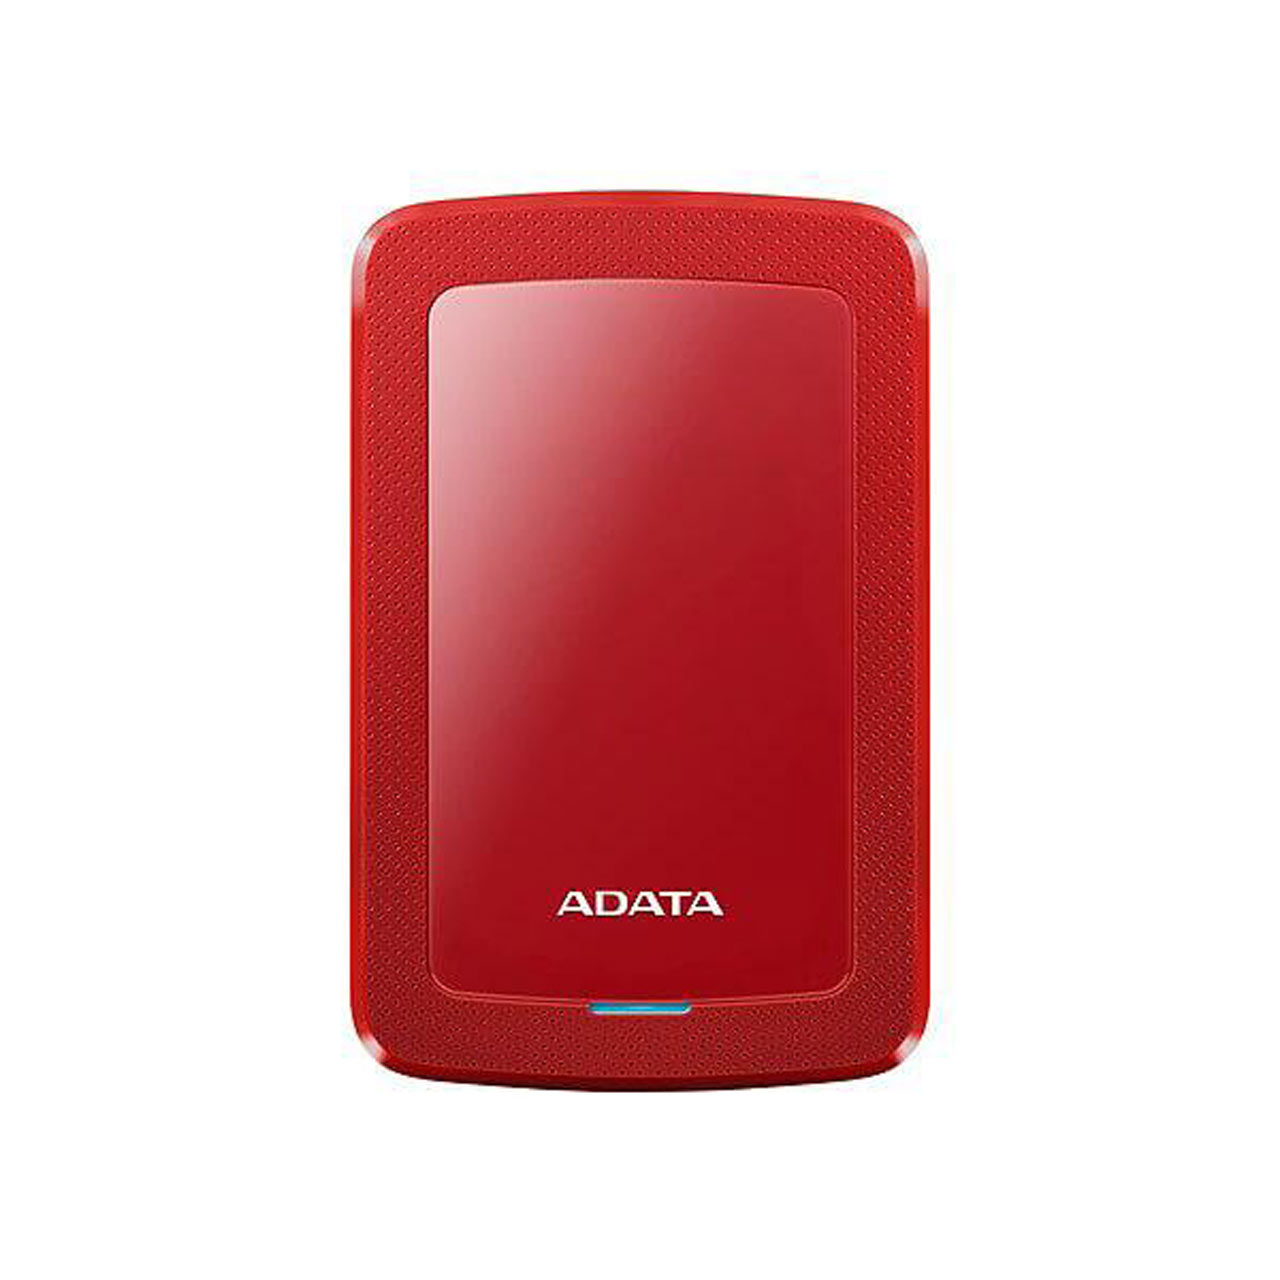 هارد اکسترنال ADATA مدل SLIM HV300 ظرفیت 1TB - قرمز (گارانتی شرکت آونگ